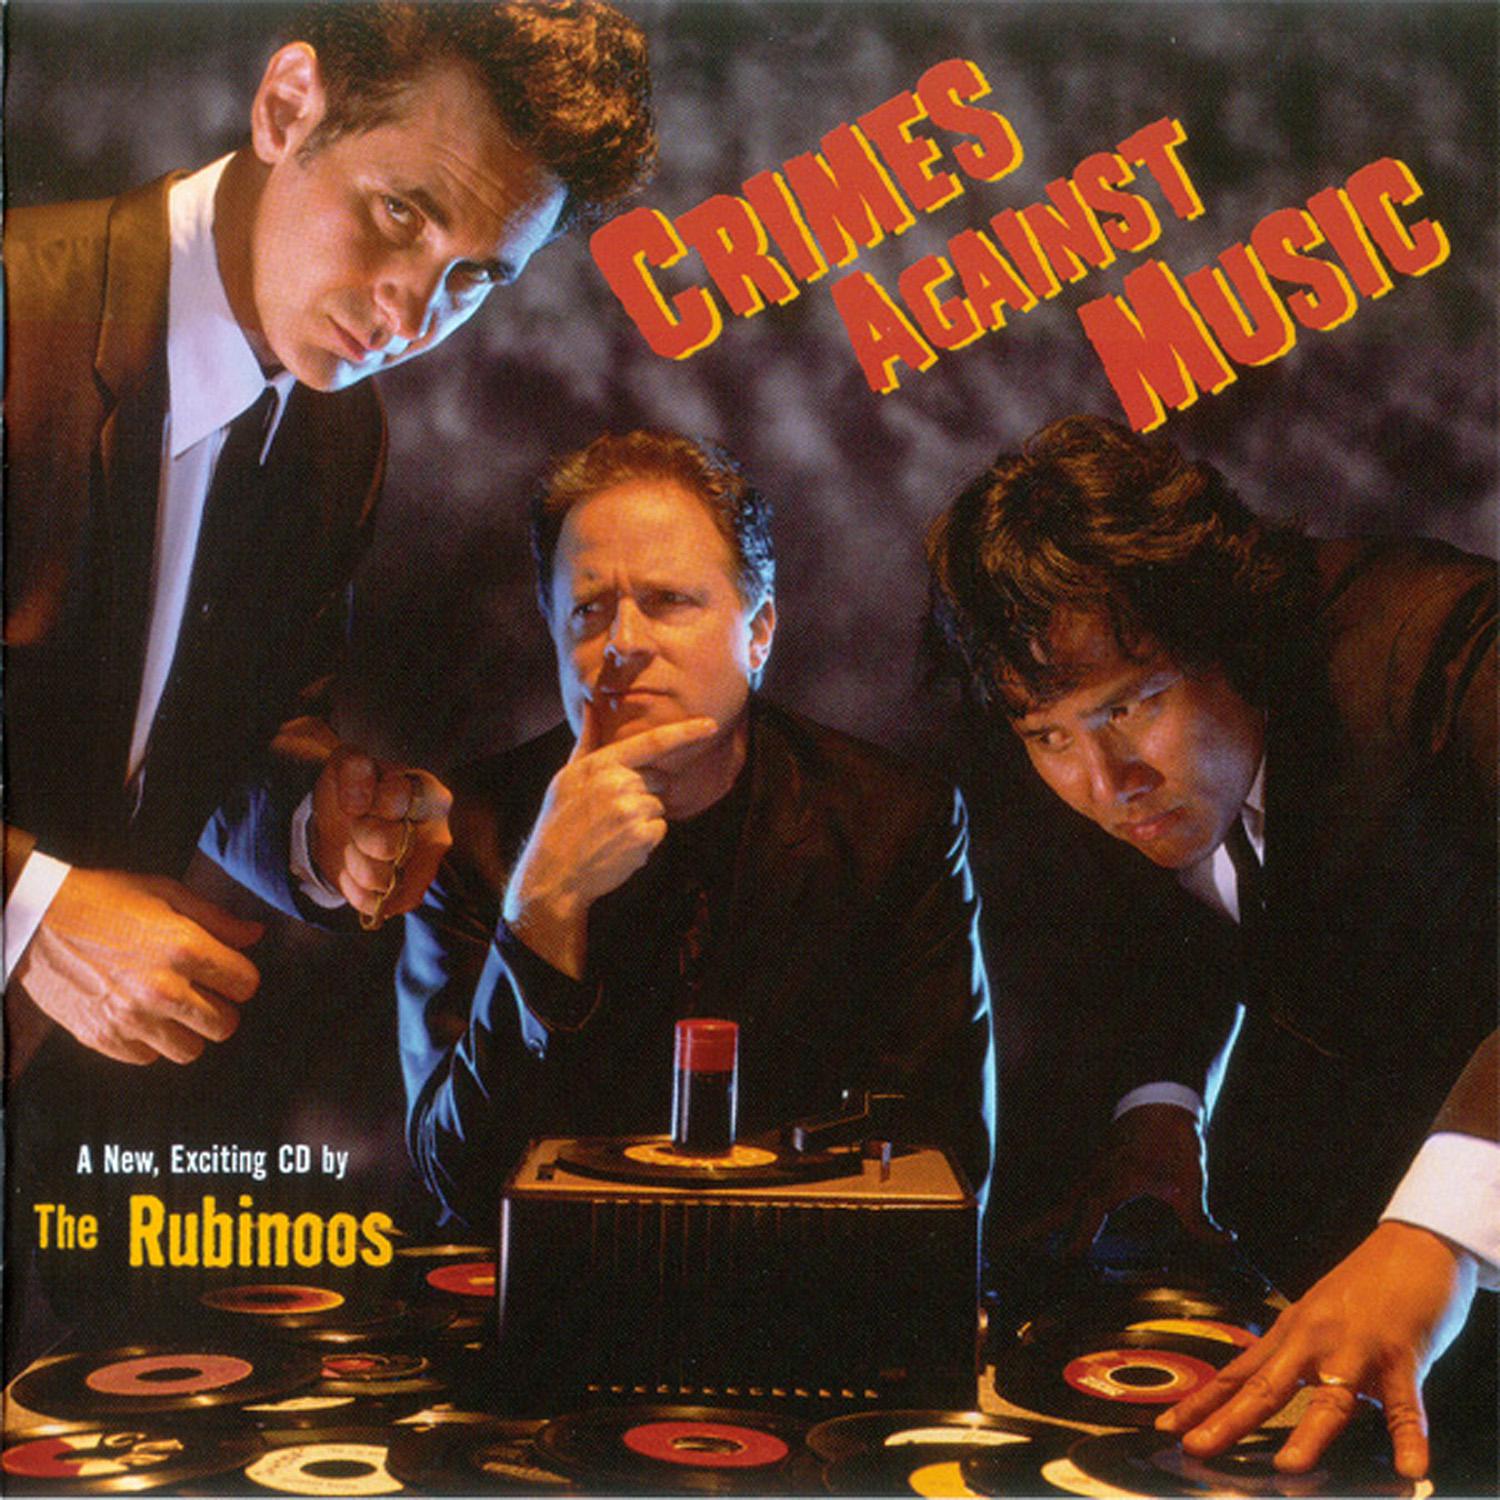 歌曲名《Tonight (Bonus Track)》，由 The Rubinoos 演唱，收录于《Crimes Against Music》专辑中.